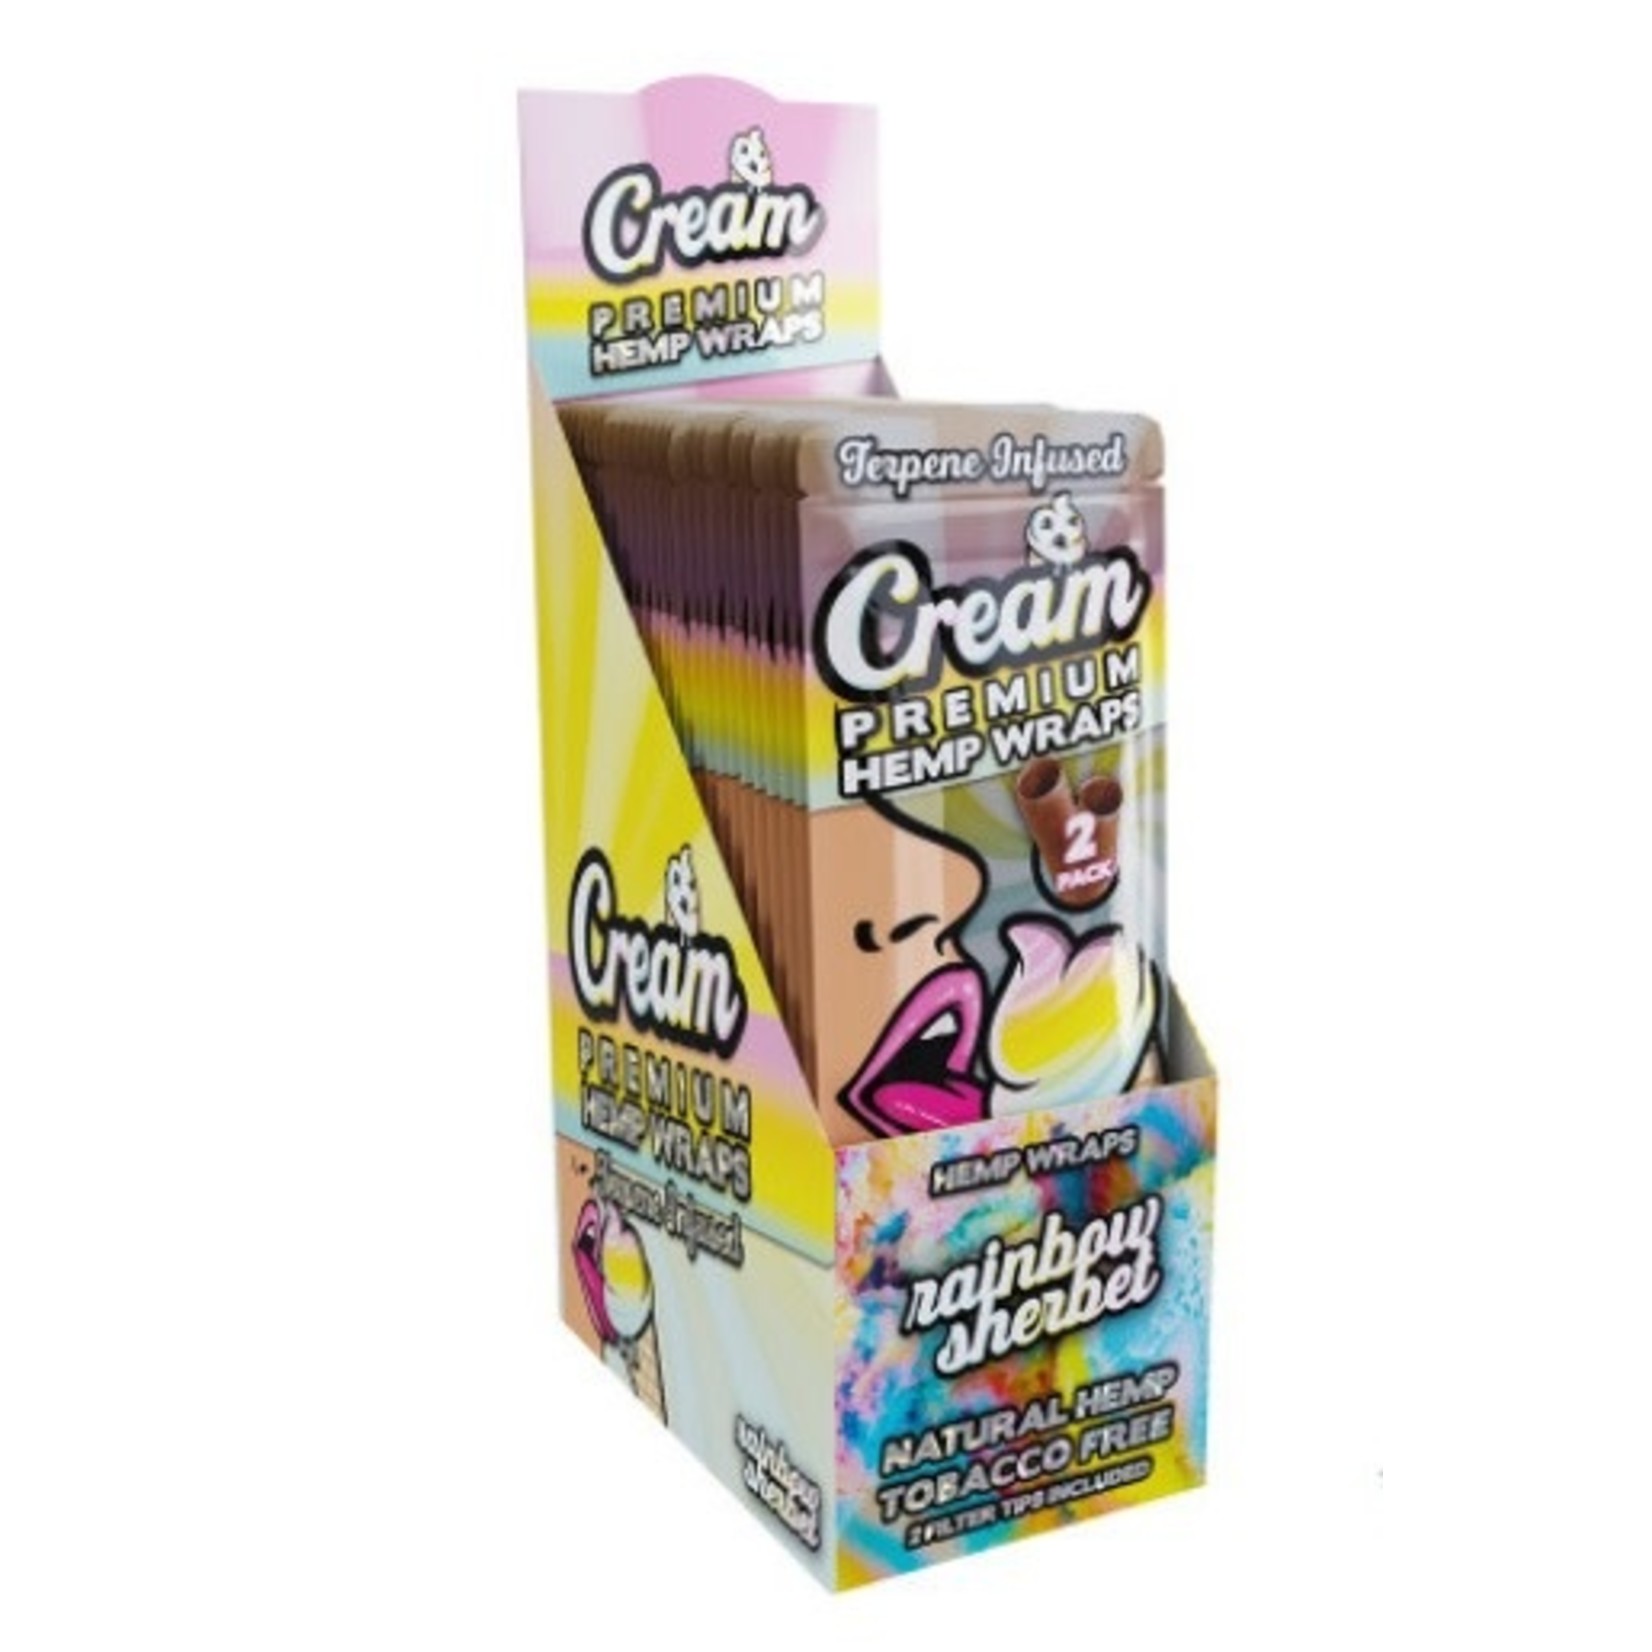 Cream Hemp Wraps Cream Premium Hemp Terpene Infused Wraps